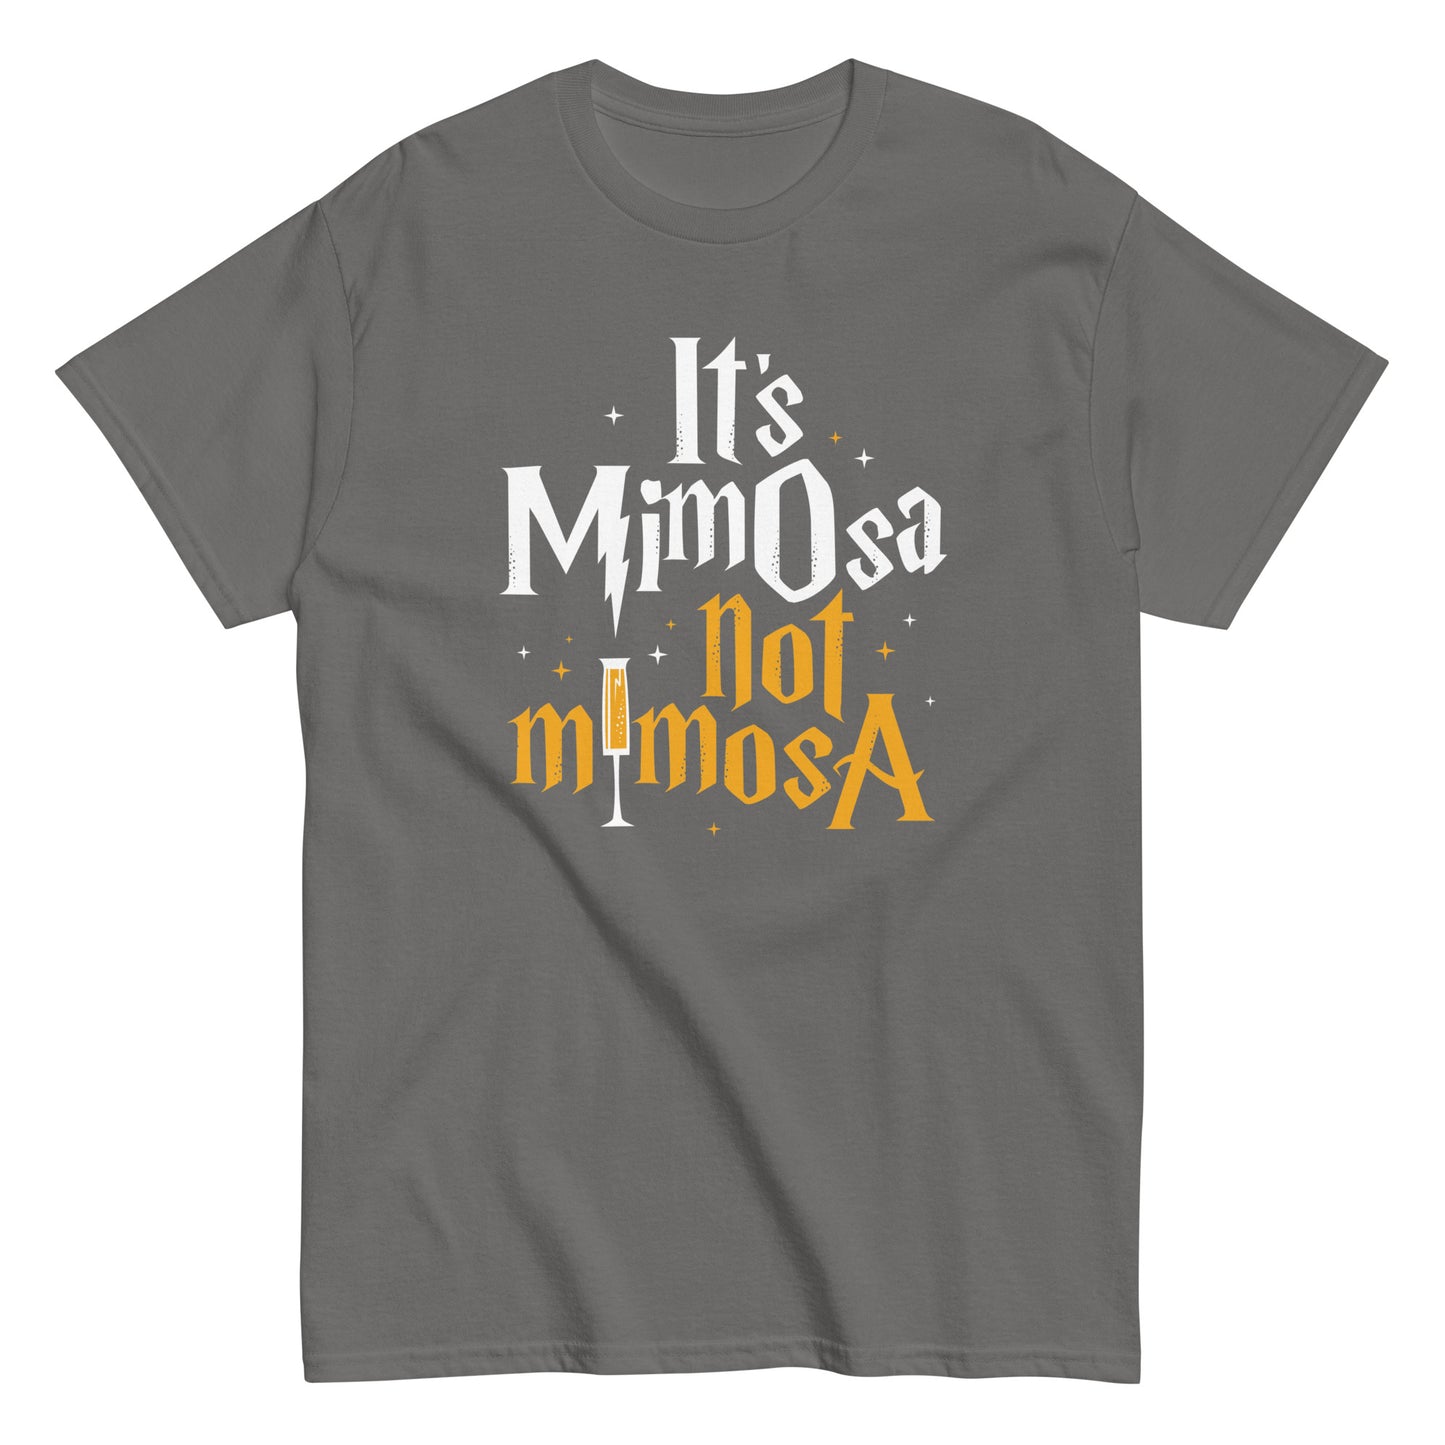 It's Mimosa Not Mimosa Men's Classic Tee